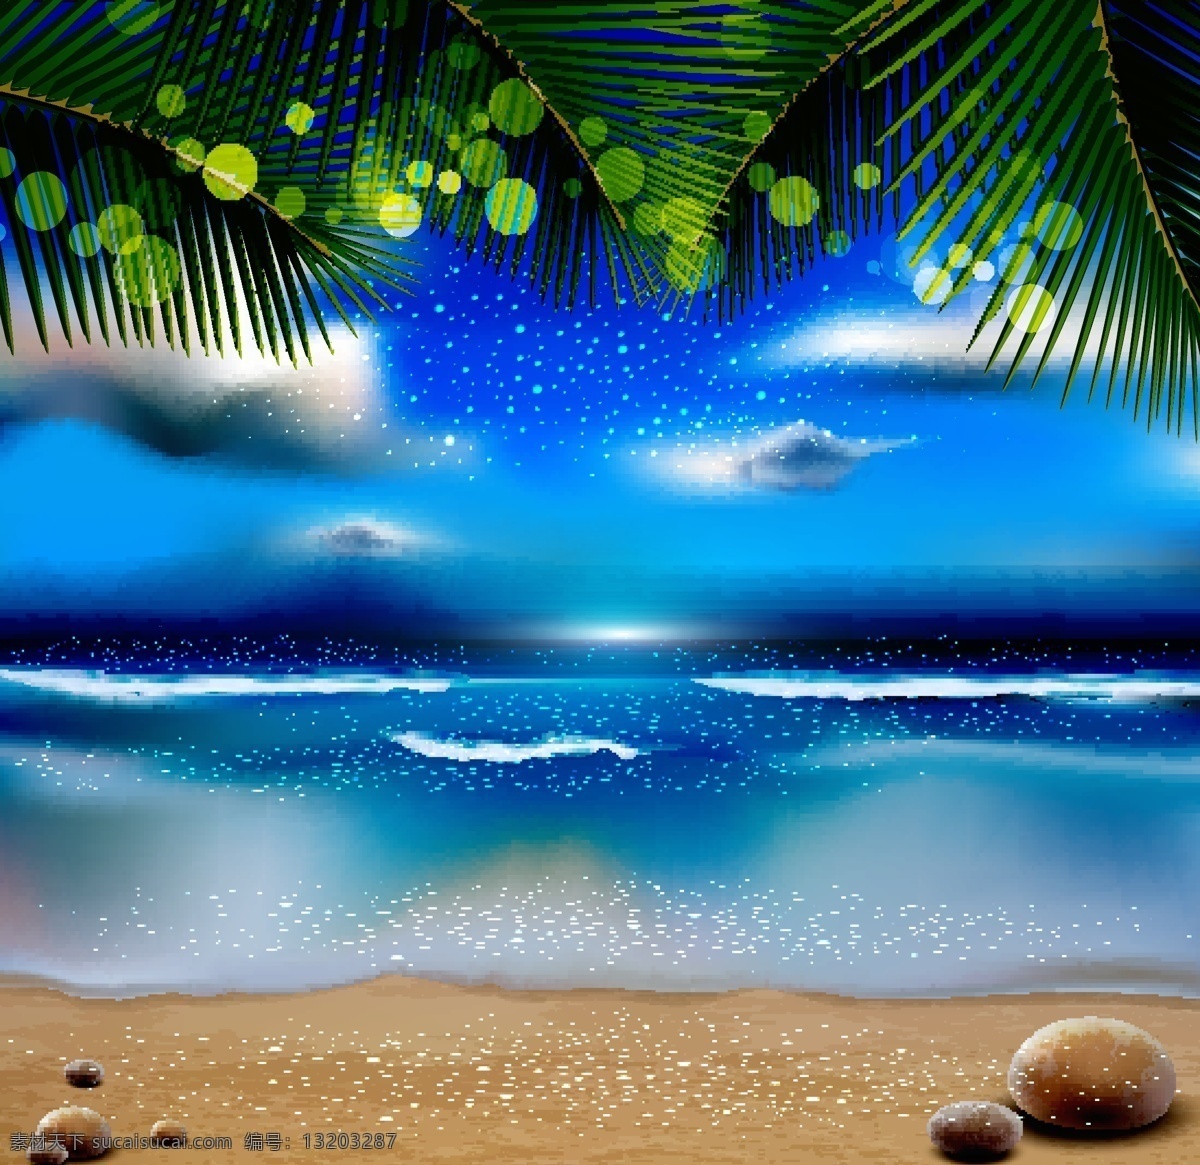 沙滩风景插画 沙滩风景 海滩 风景插画 沙滩背景 自然风光 空间环境 矢量素材 白色